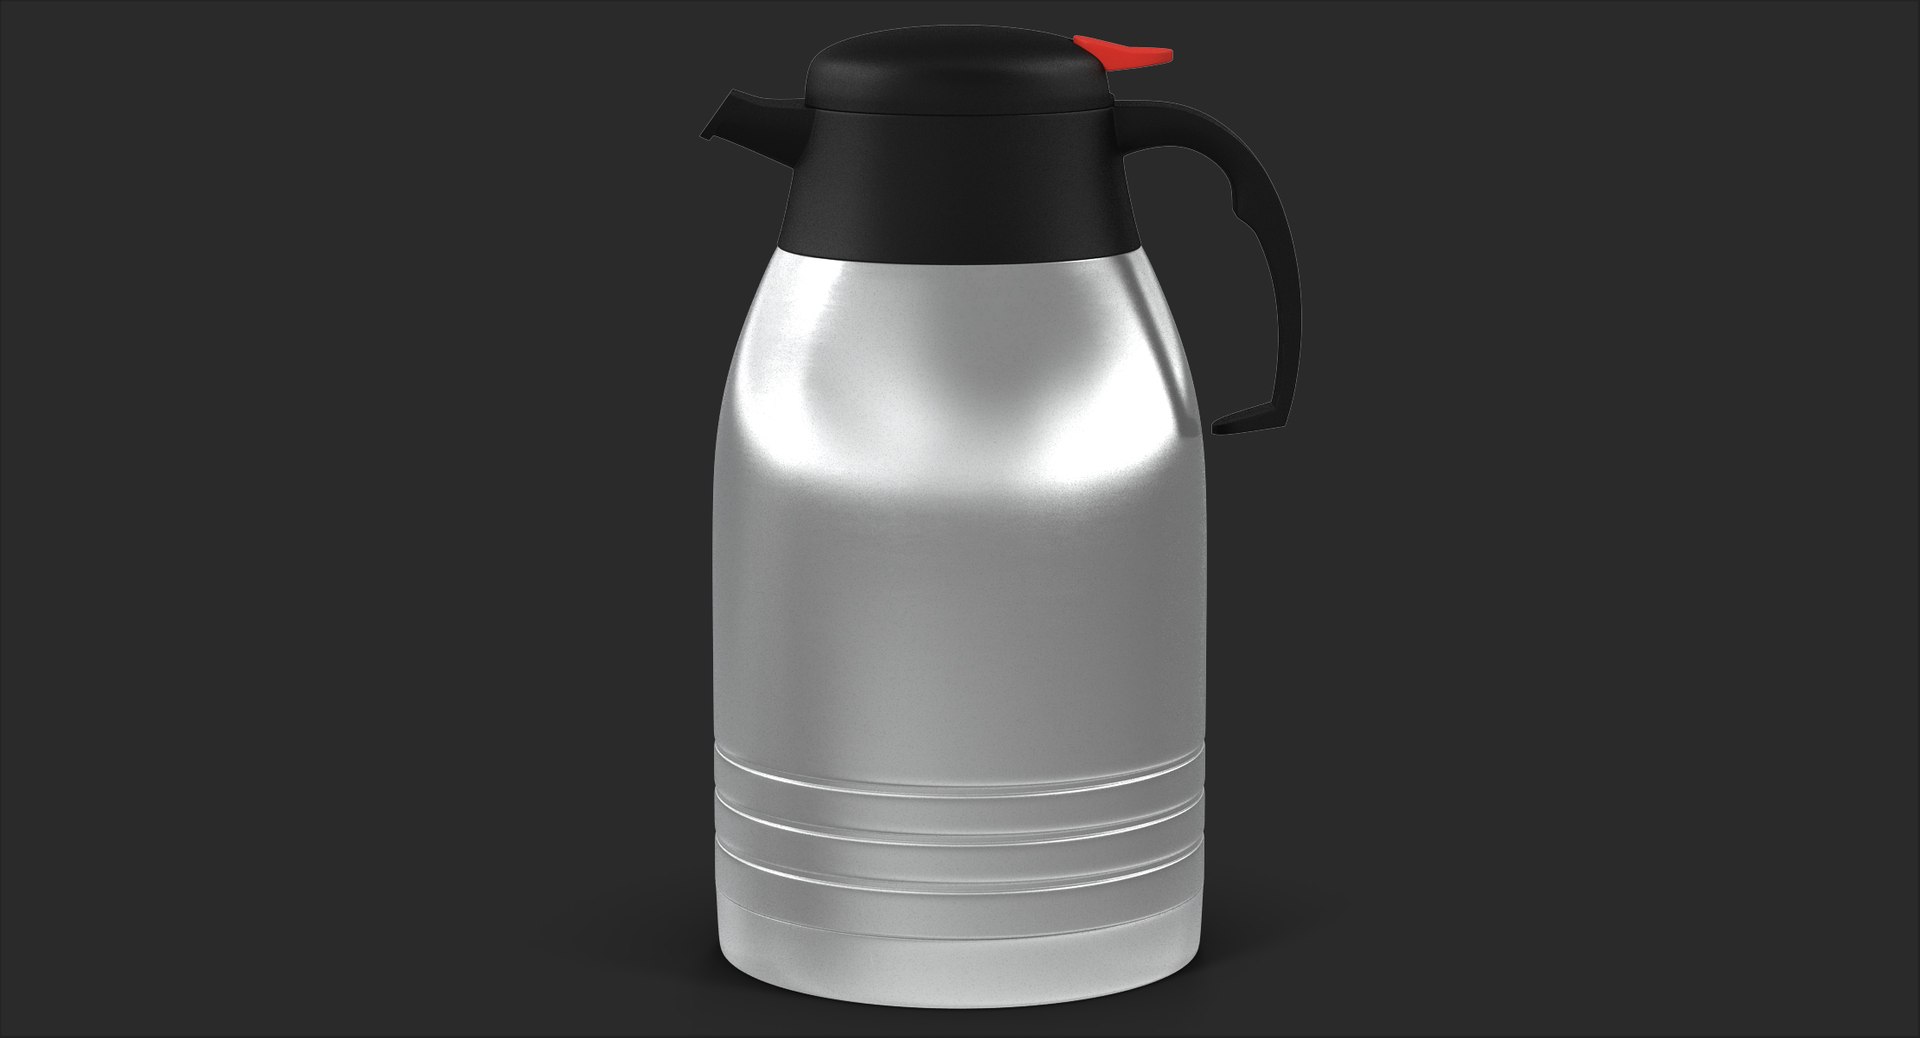 thermos coffee 3D model https://p.turbosquid.com/ts-thumb/Ks/ZTjMYa/sjFwbUg0/angles_grey_00001/jpg/1496157108/1920x1080/fit_q87/b629438635b1e02d676983fd6161d2c9c0f56fdc/angles_grey_00001.jpg